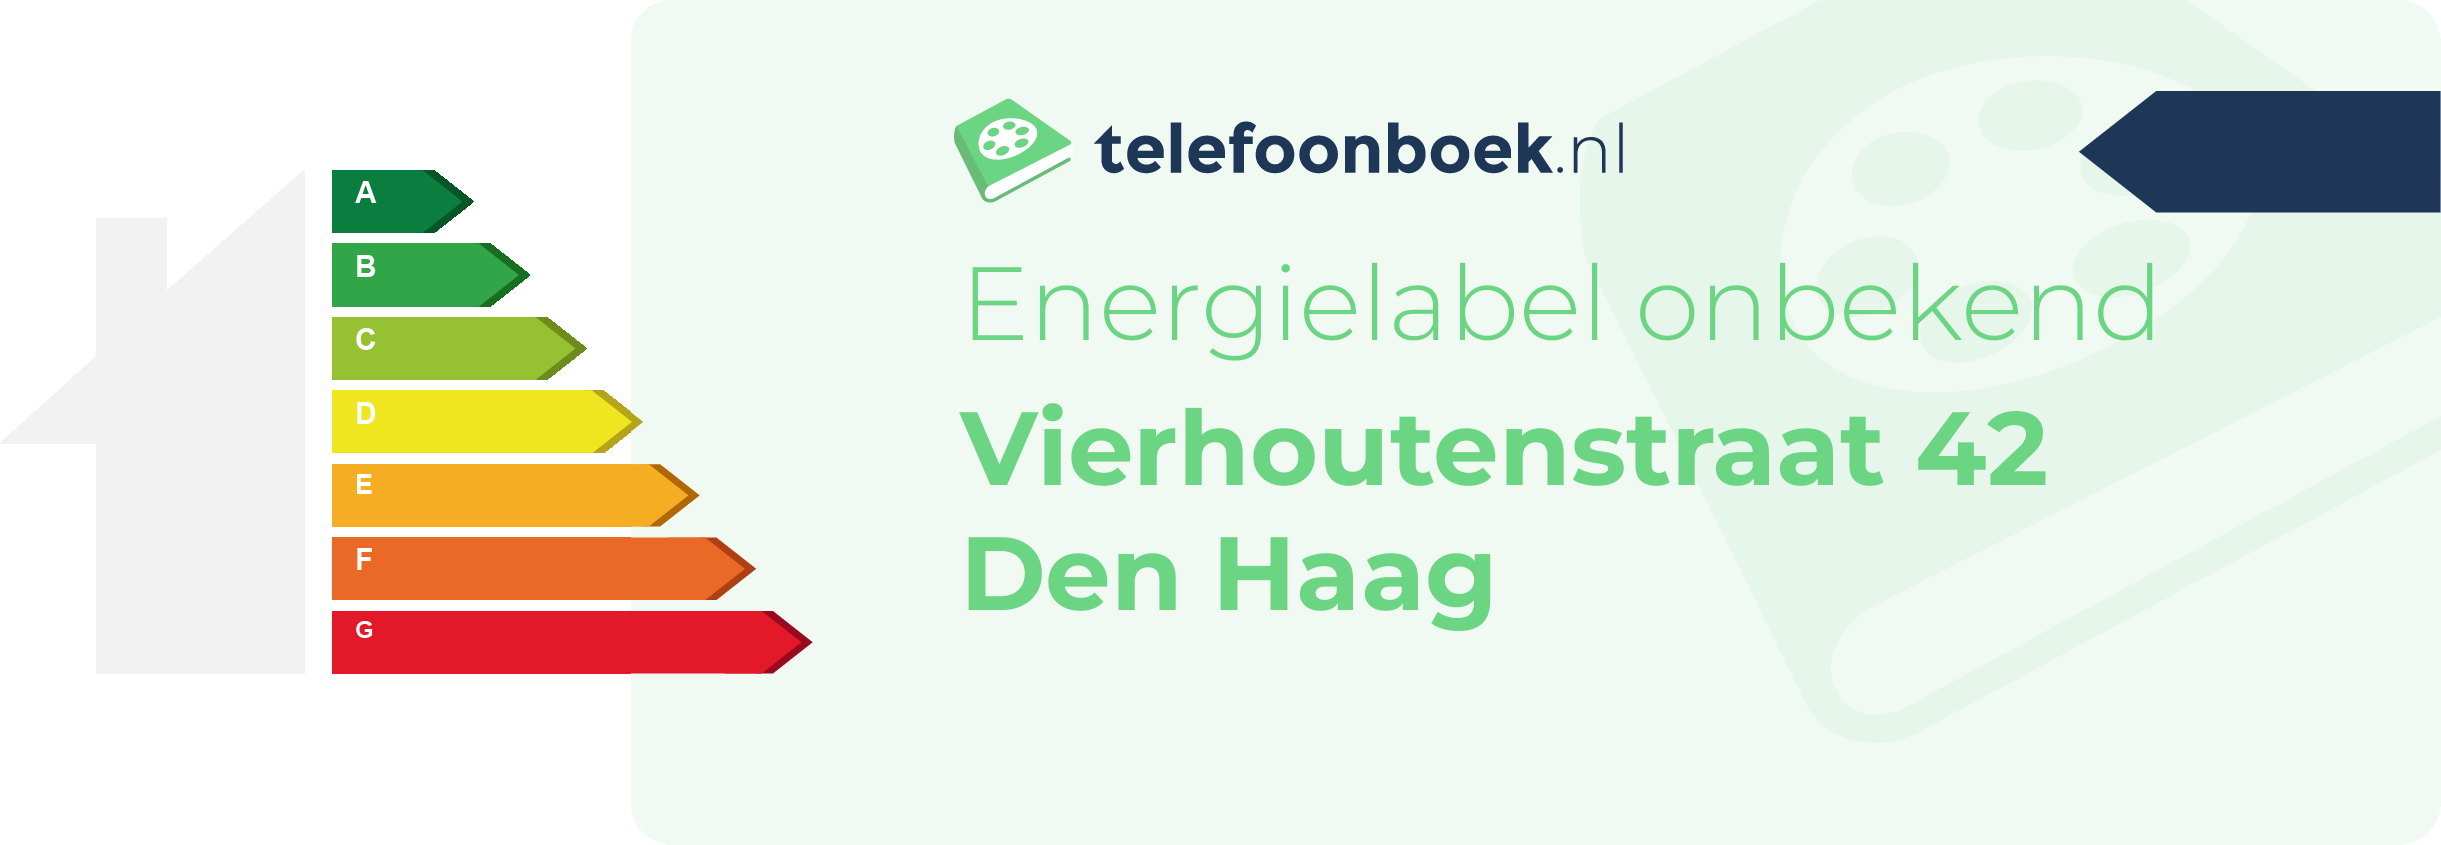 Energielabel Vierhoutenstraat 42 Den Haag